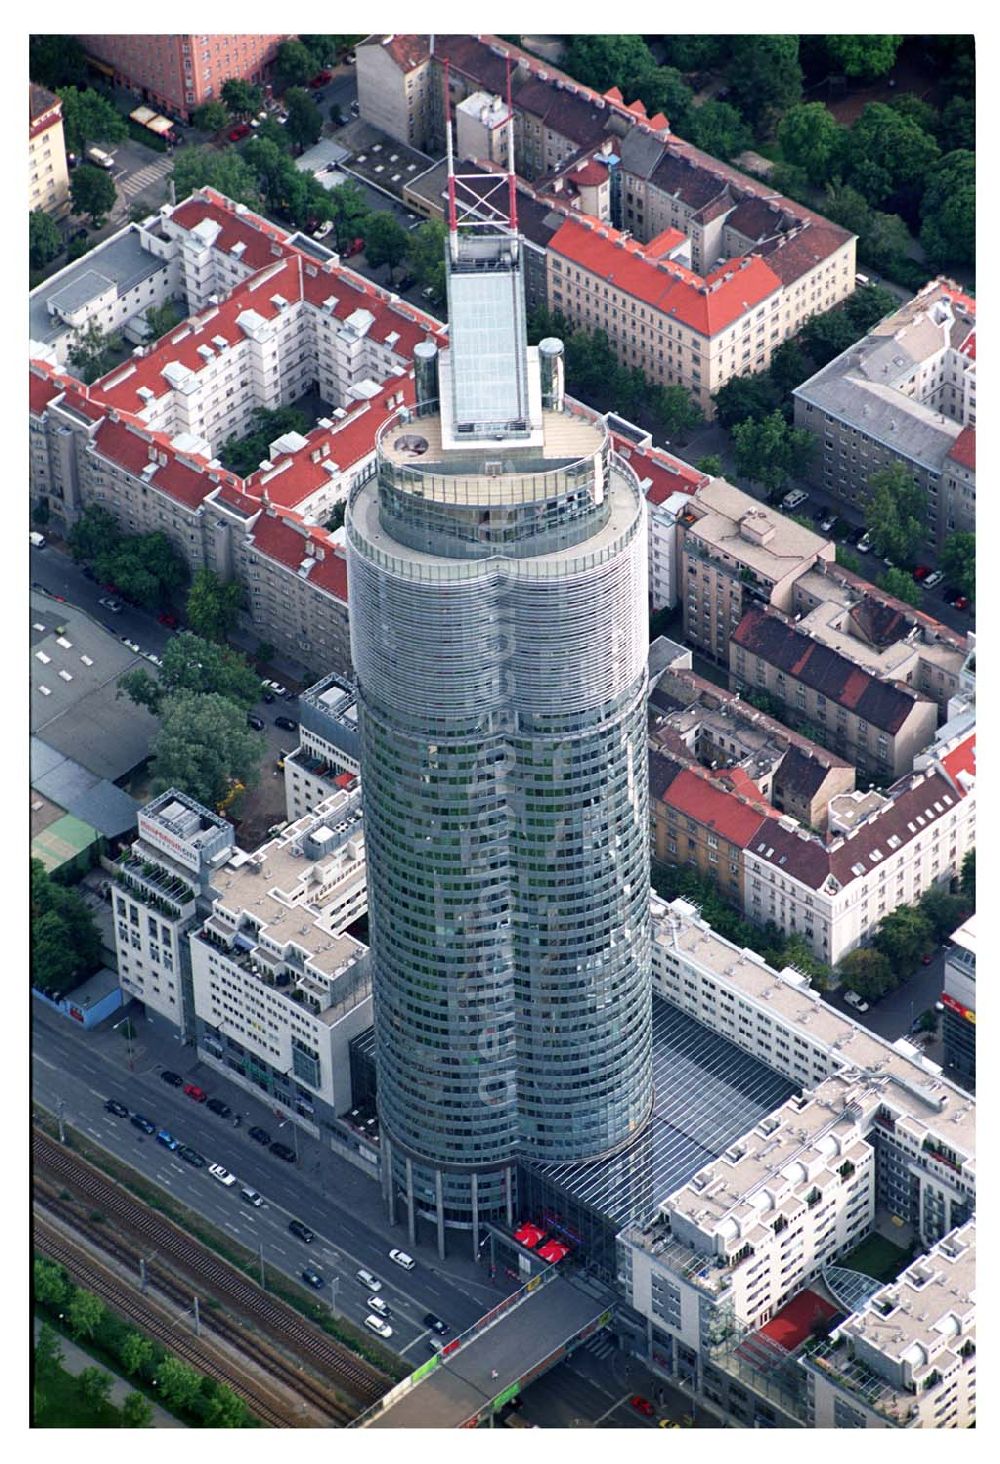 Aerial photograph Wien (Österreich) - Blick auf das höchste Gebäude Österreichs, den Millennium Tower (202m hoch) am Handelskai in Wien. Der 1999 fertiggestellte Gesamtkomplex hat insgesamt eine Fläche von 100.000 qm und umfaßt Büroflächen, Wohneinheiten und ein Einkaufs- und Dienstleistungszentrums Millennium City.